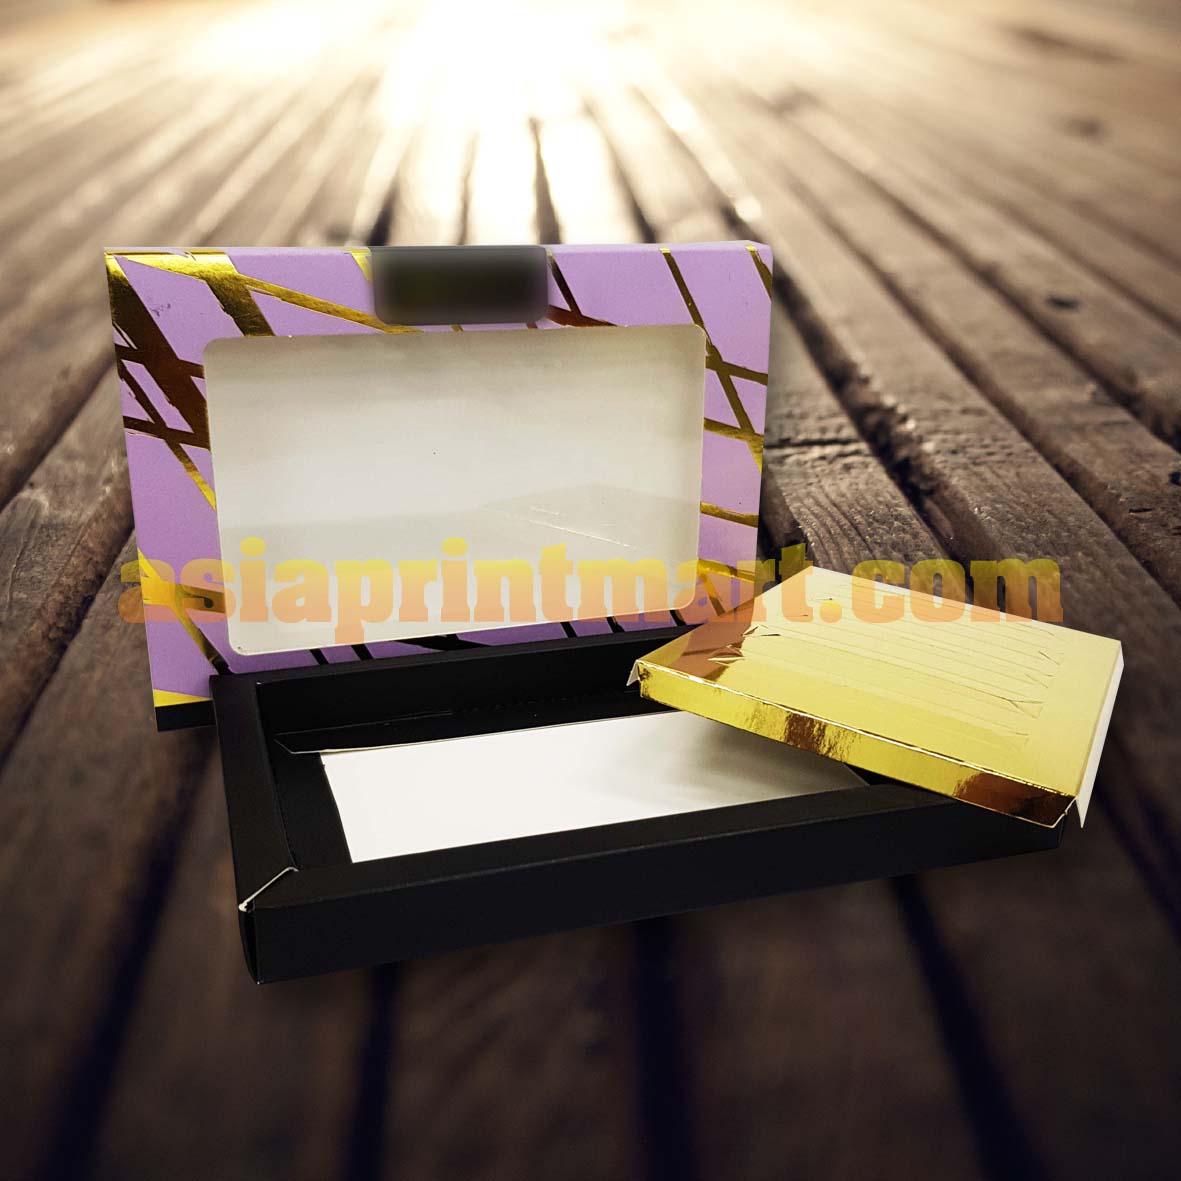 Kilang Cetak Kotak Murah | Cosmetics Box Printing Supplier | Beauty Packaging Box Company | Kedai Cetak Kotak Kosmetik